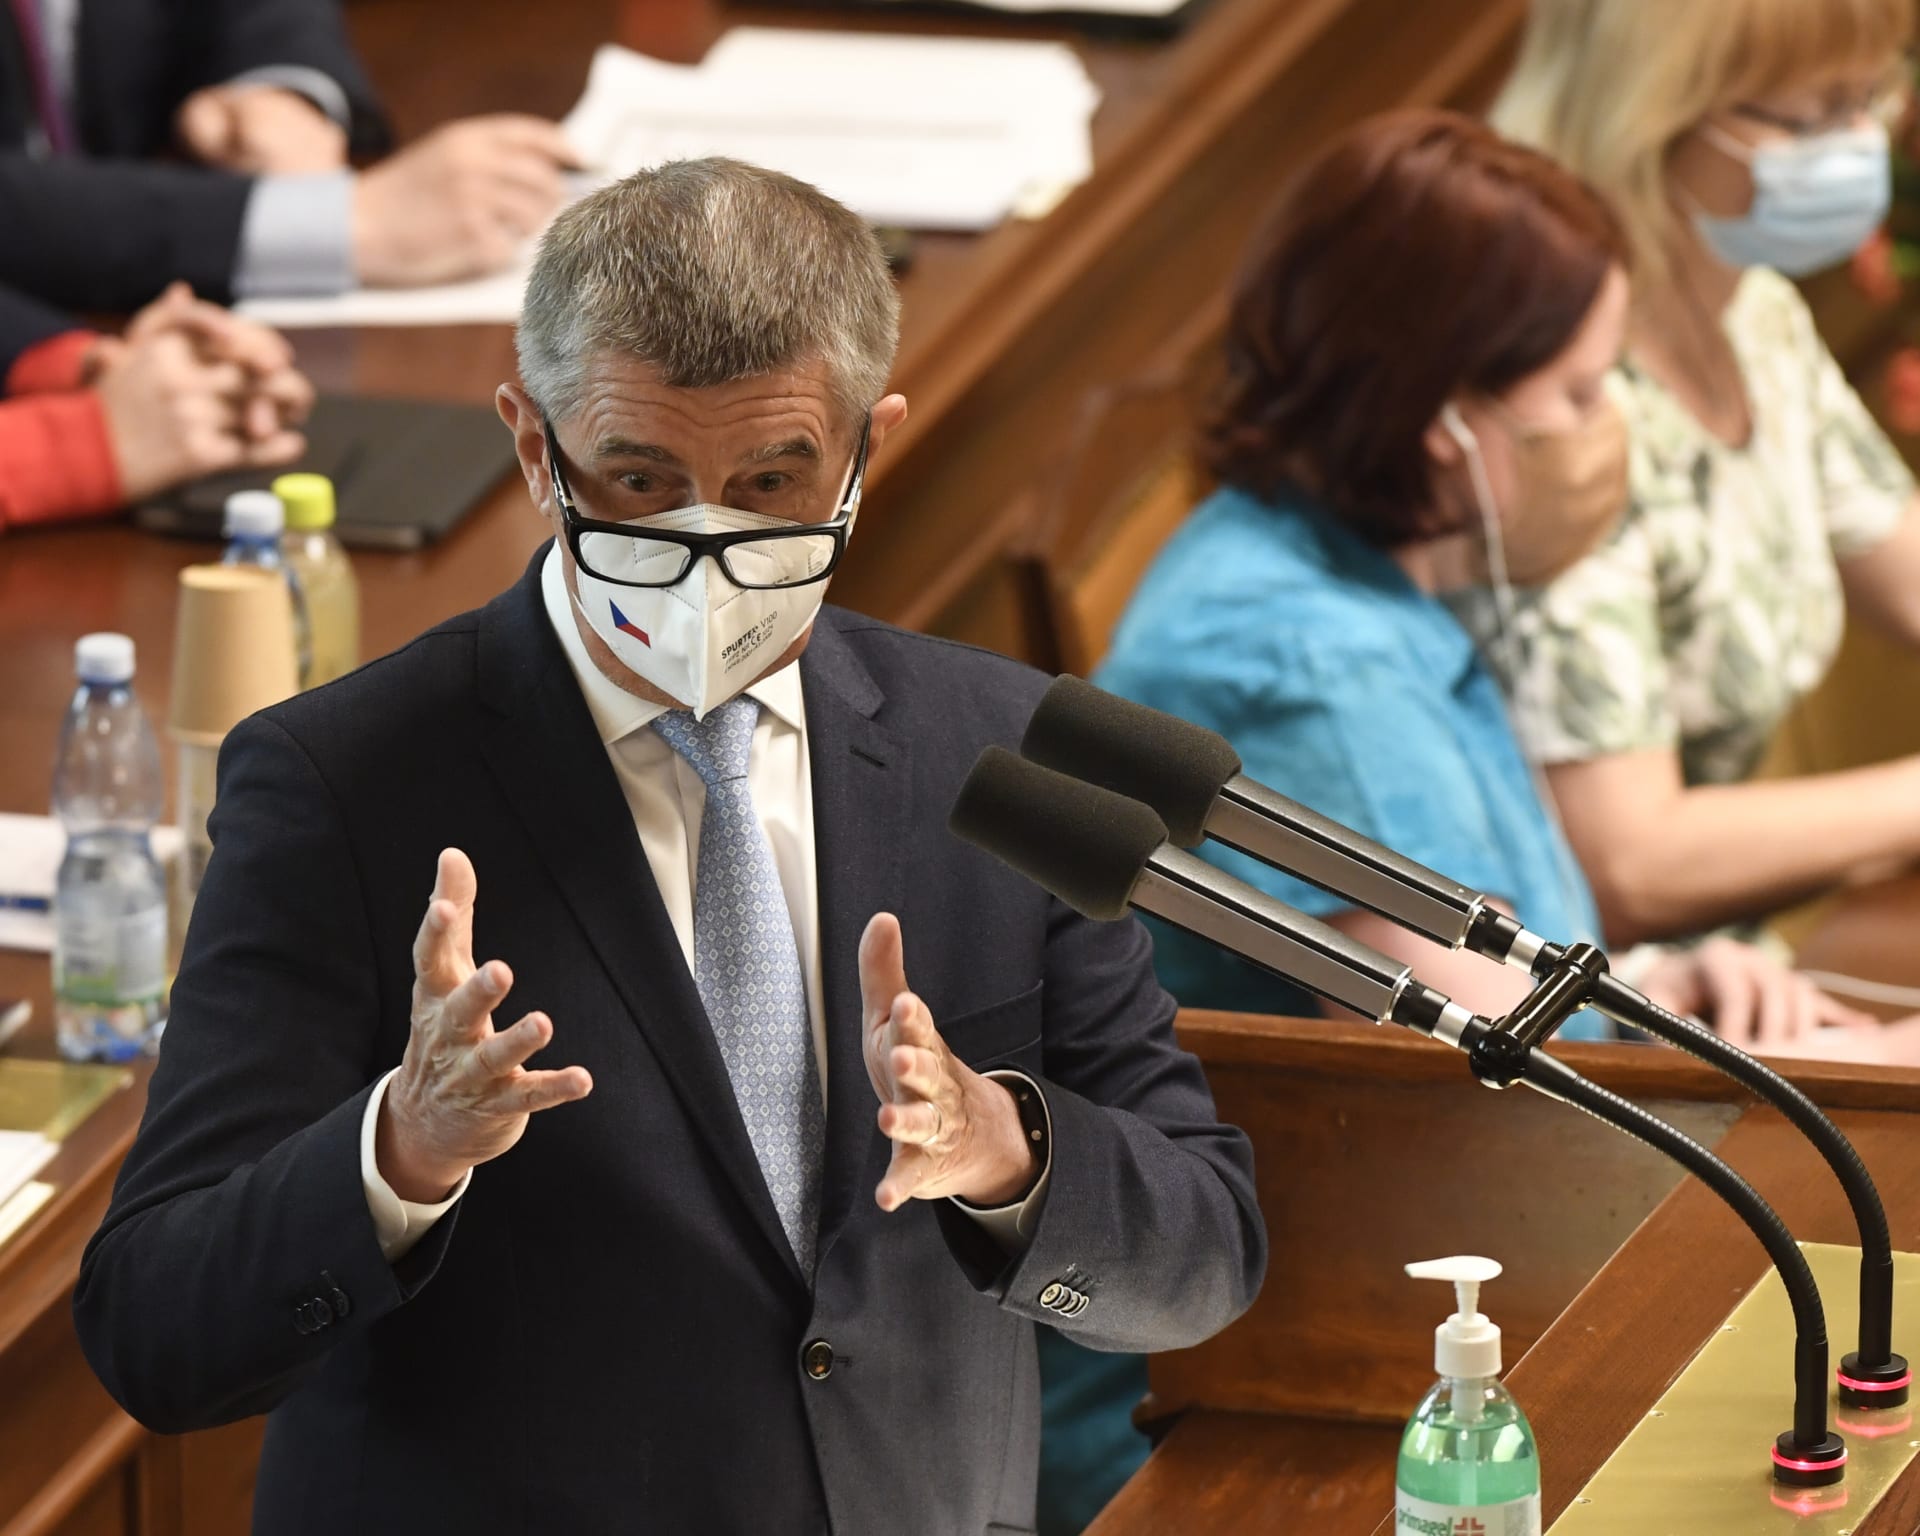 Premiér Andrej Babiš během projevu ve Sněmovně, kdy vyzýval poslance, aby místo covidu řešili zahrádkářský zákon. Snímek z 3. června 2021